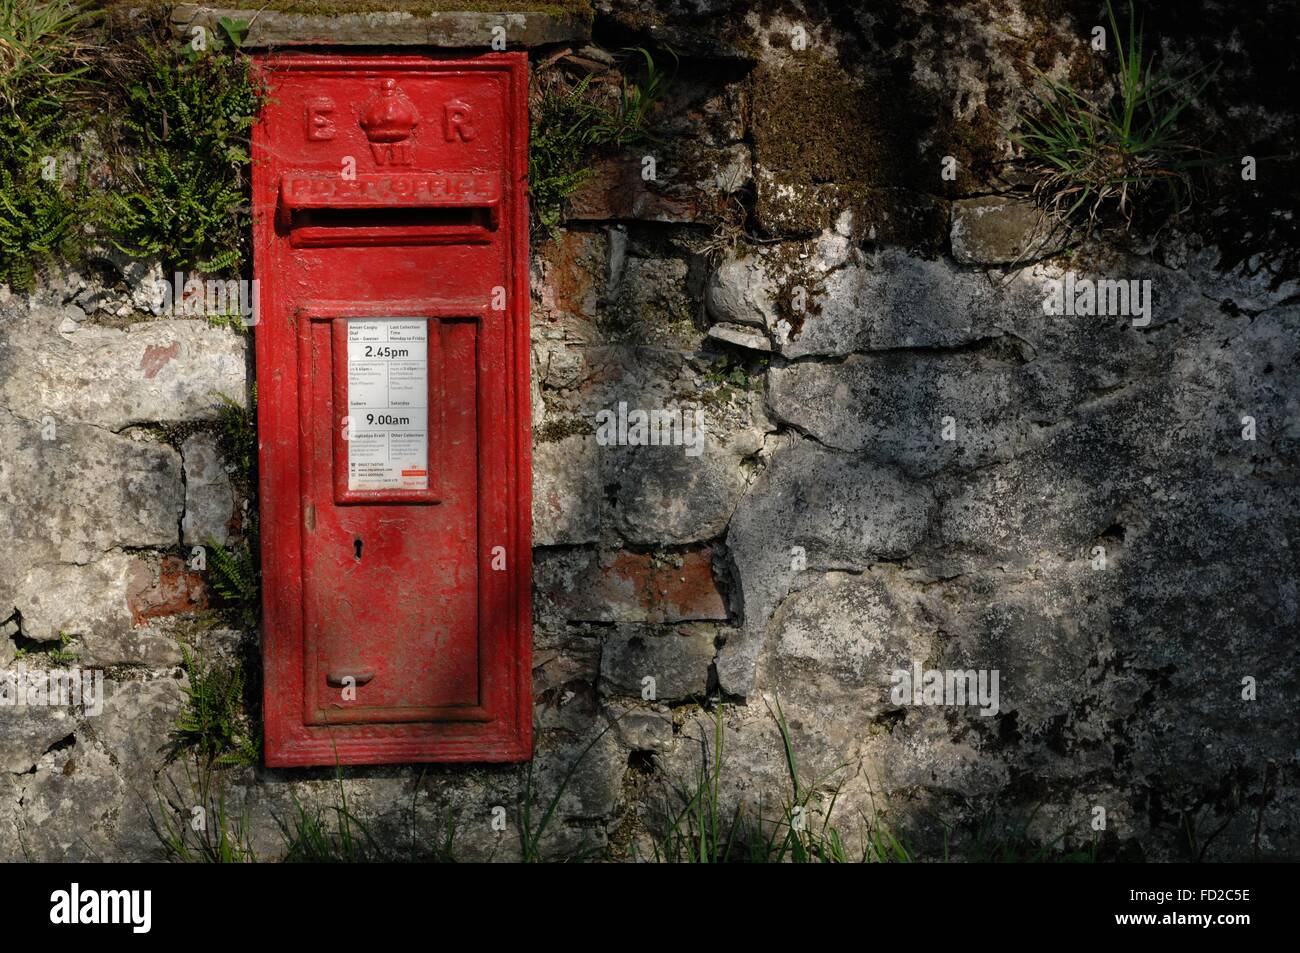 Cynghordy, Carmarthenshire, Pays de Galles, Royaume-Uni, Gosen chapelle rouge, boite aux lettres, E:R / Gallois bilingue anglais. Banque D'Images